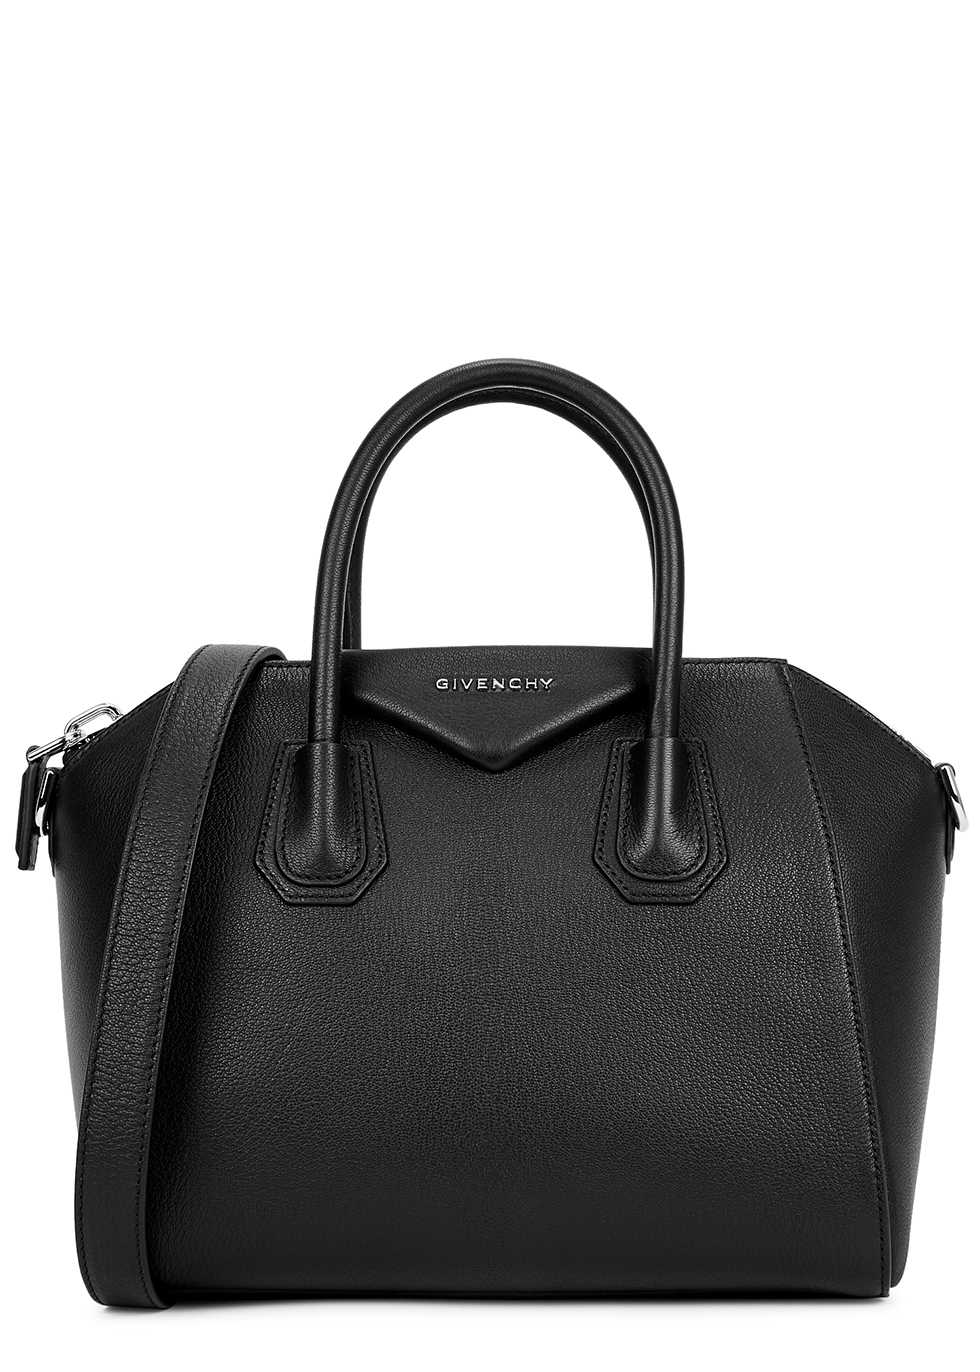 Givenchy Antigona small black leather 